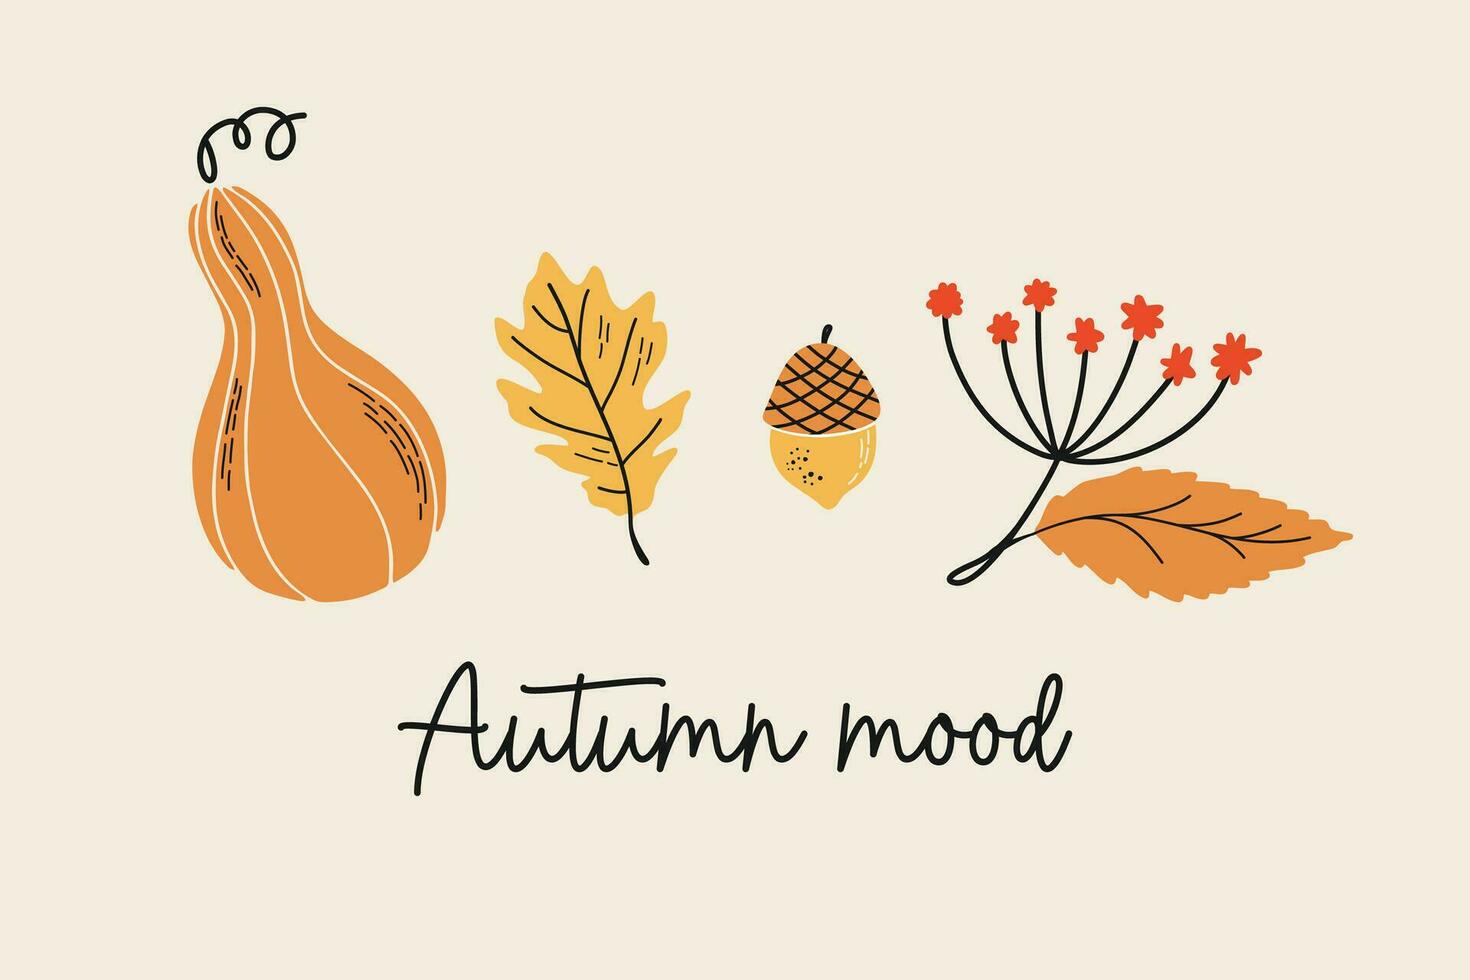 outono composição com mão desenhado botânico elementos. vetor outono ilustração com abóbora, carvalho folha, bagas, bolota e outono humor slogan.